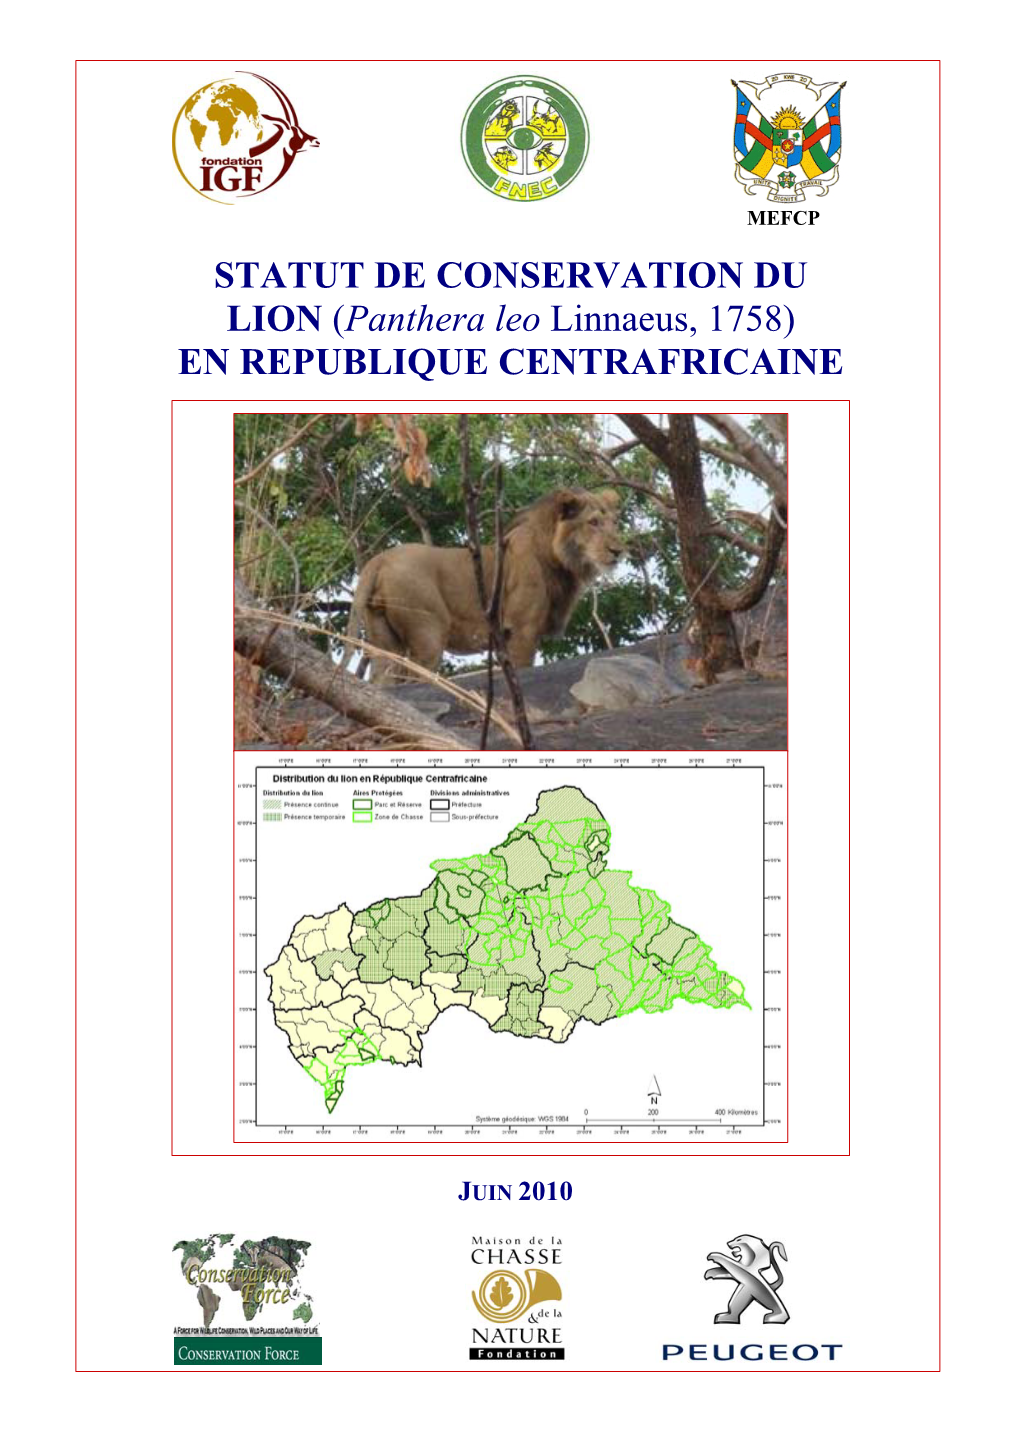 STATUT DE CONSERVATION DU LION (Panthera Leo Linnaeus, 1758) EN REPUBLIQUE CENTRAFRICAINE